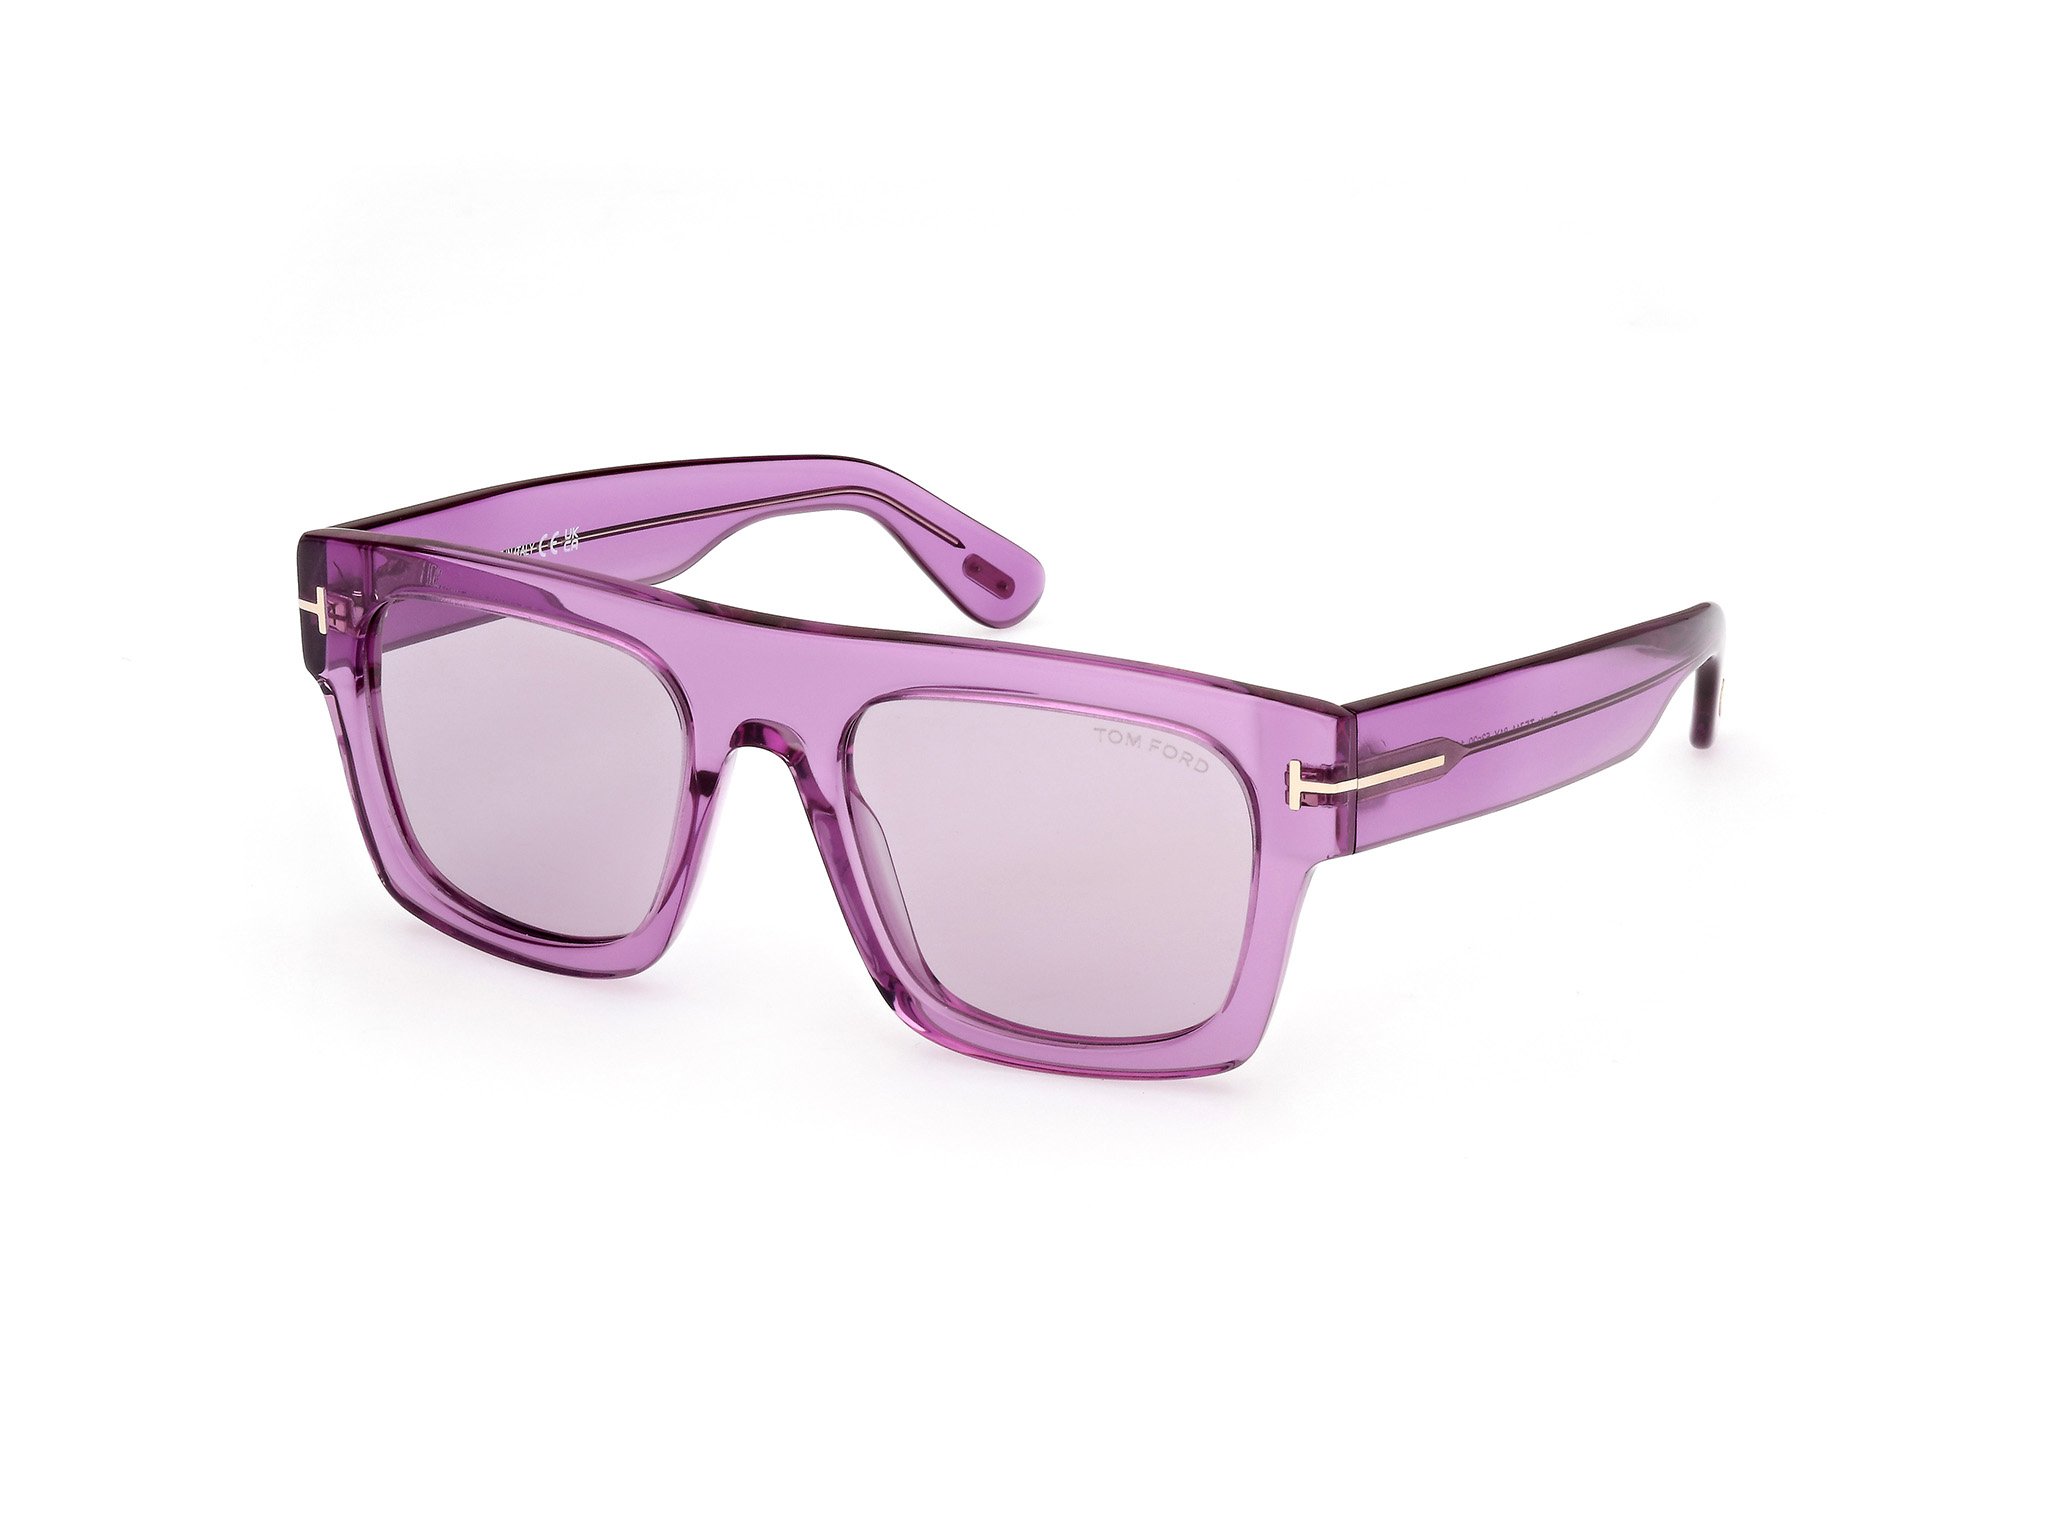 Das Bild zeigt die Sonnenbrille FT0711 81Y von der Marke Tom Ford in lila.